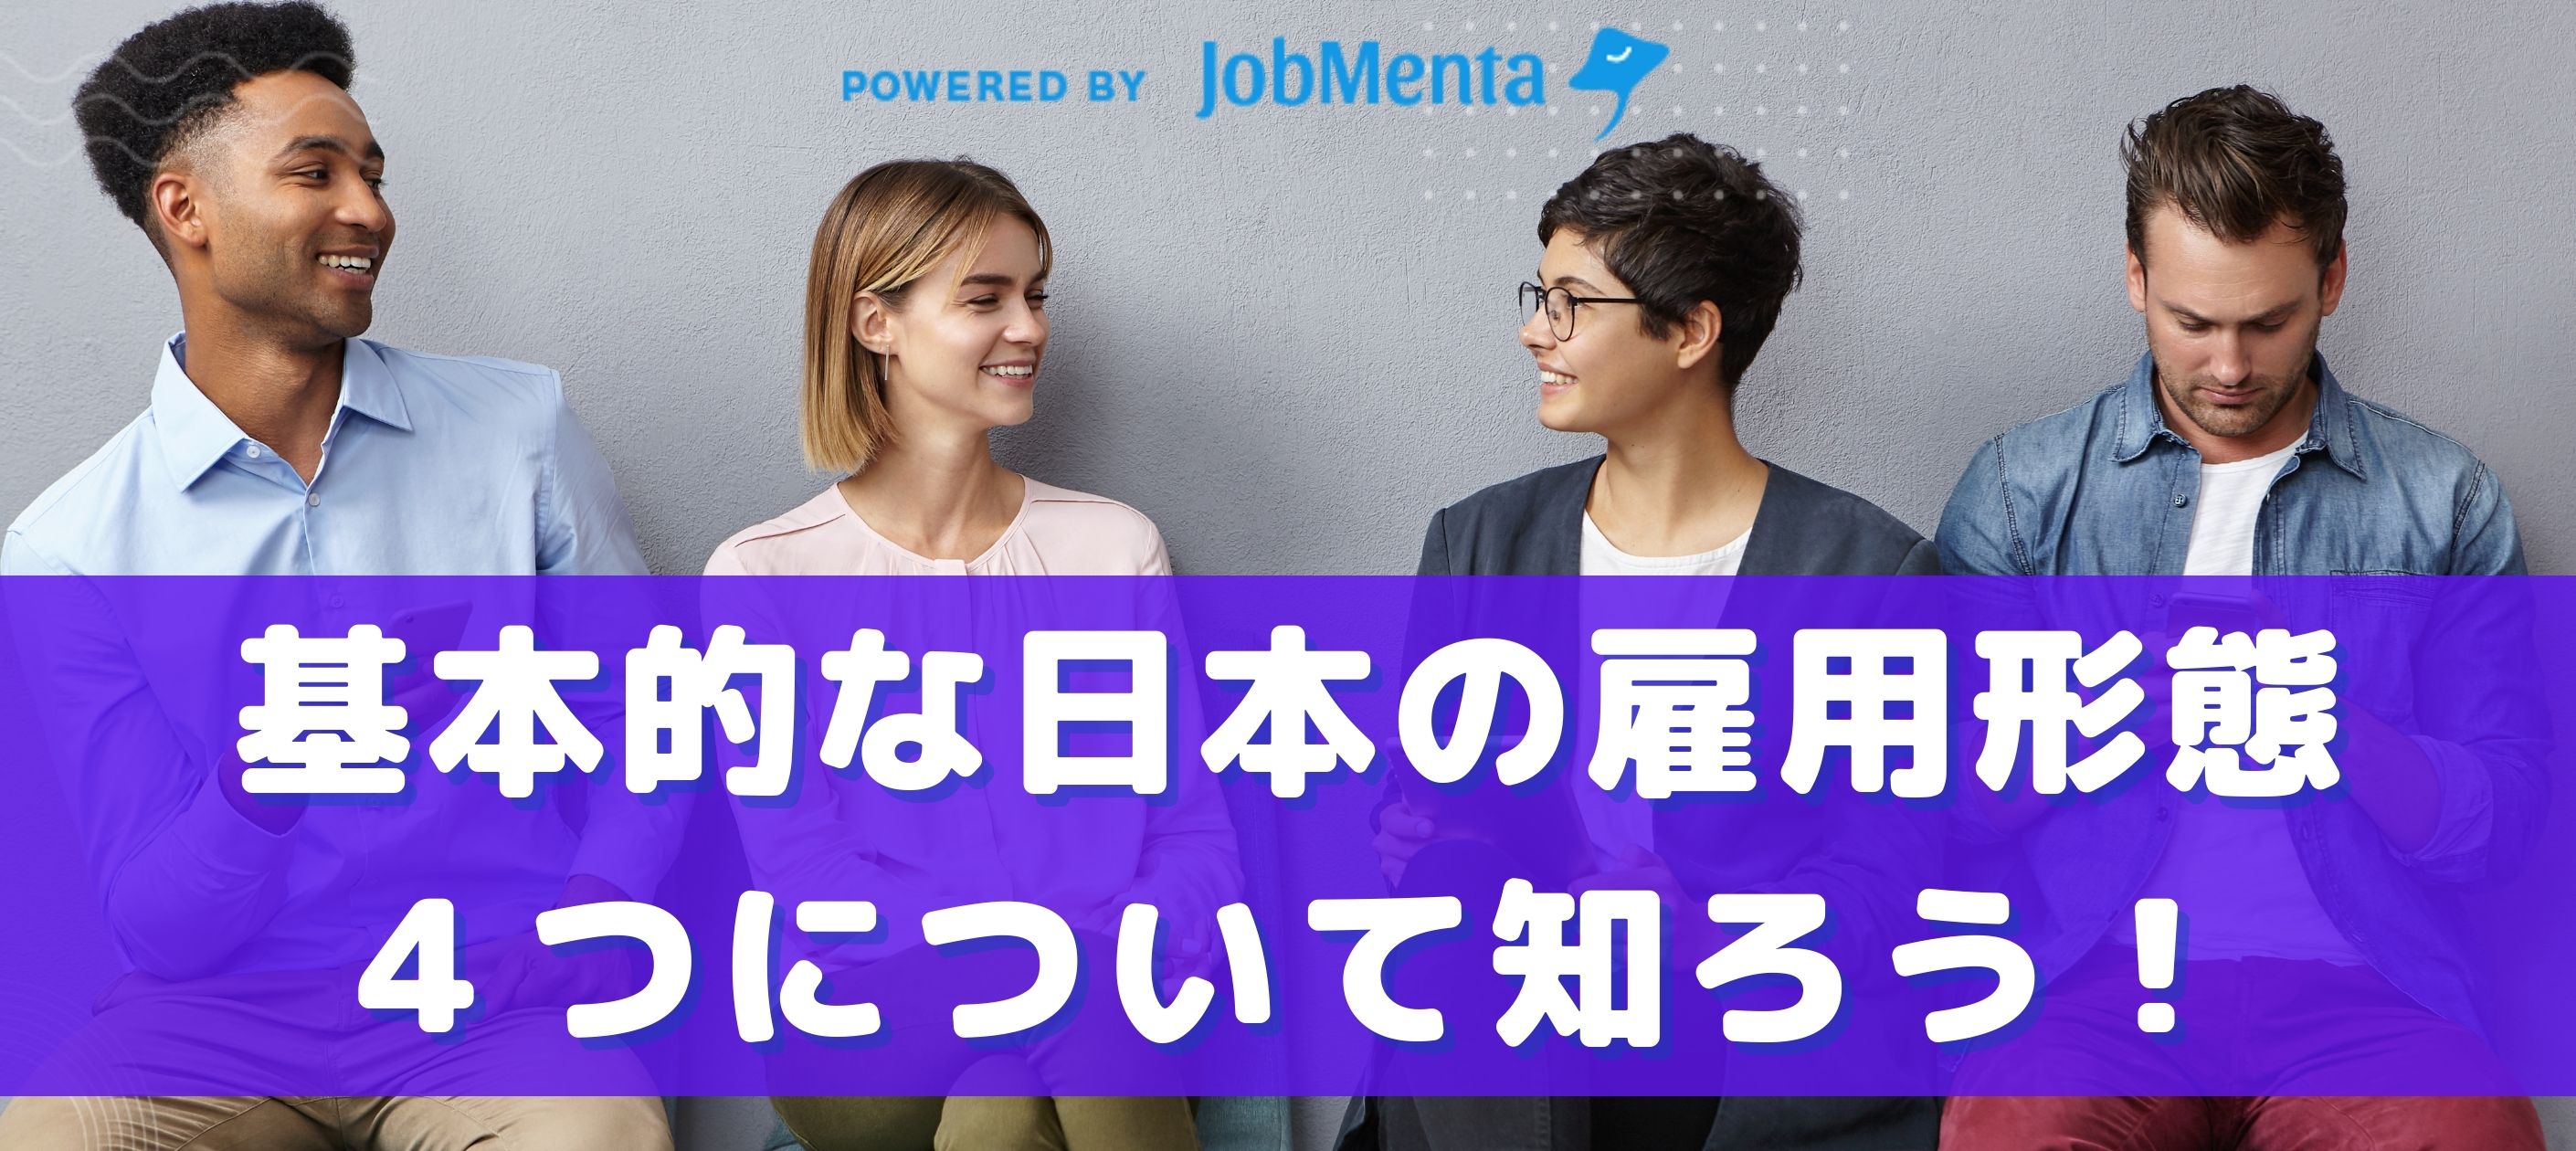 基本的な日本の雇用形態